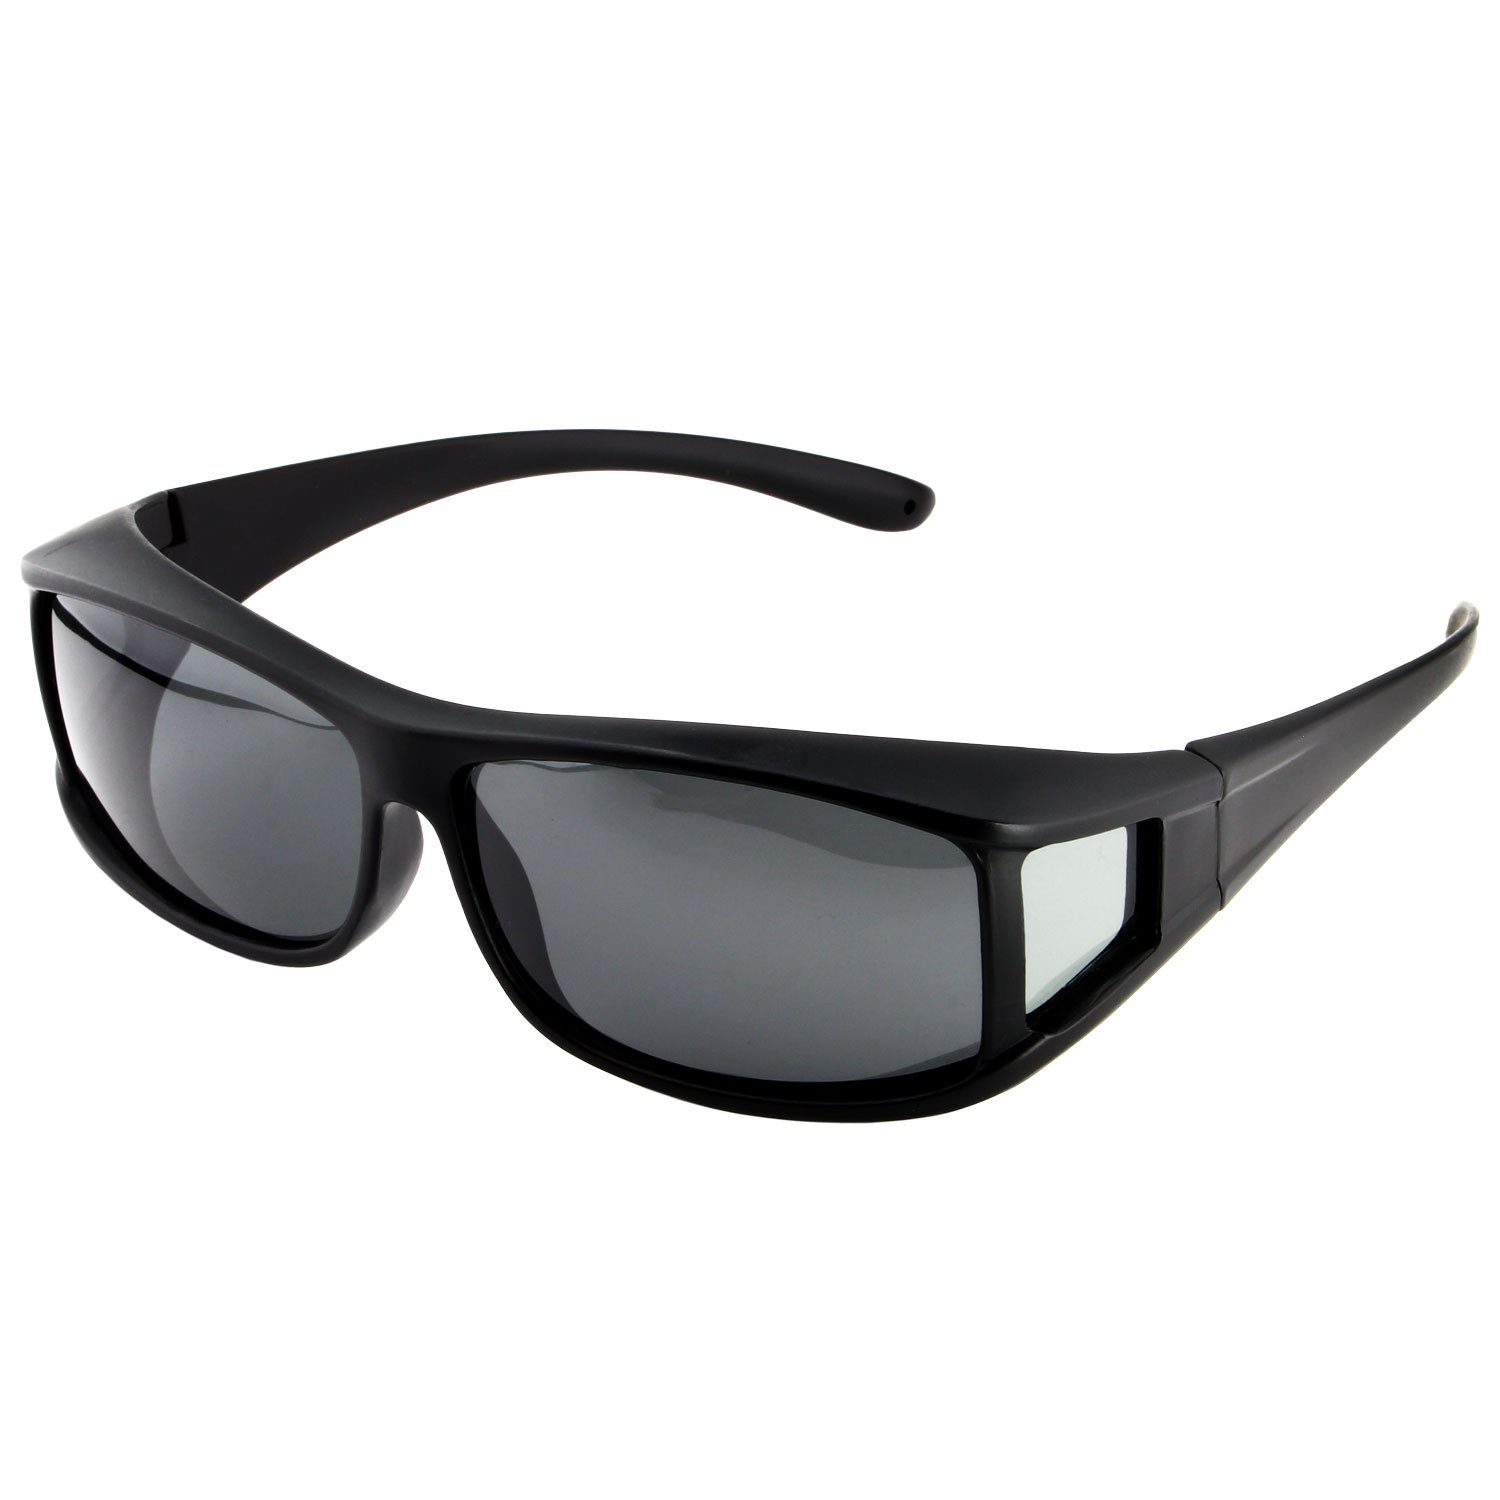 ActiveSol SUNGLASSES Sonnenbrille Überziehsonnenbrille Classic für Herren polarisierte, UV 400 Schwarz Matt